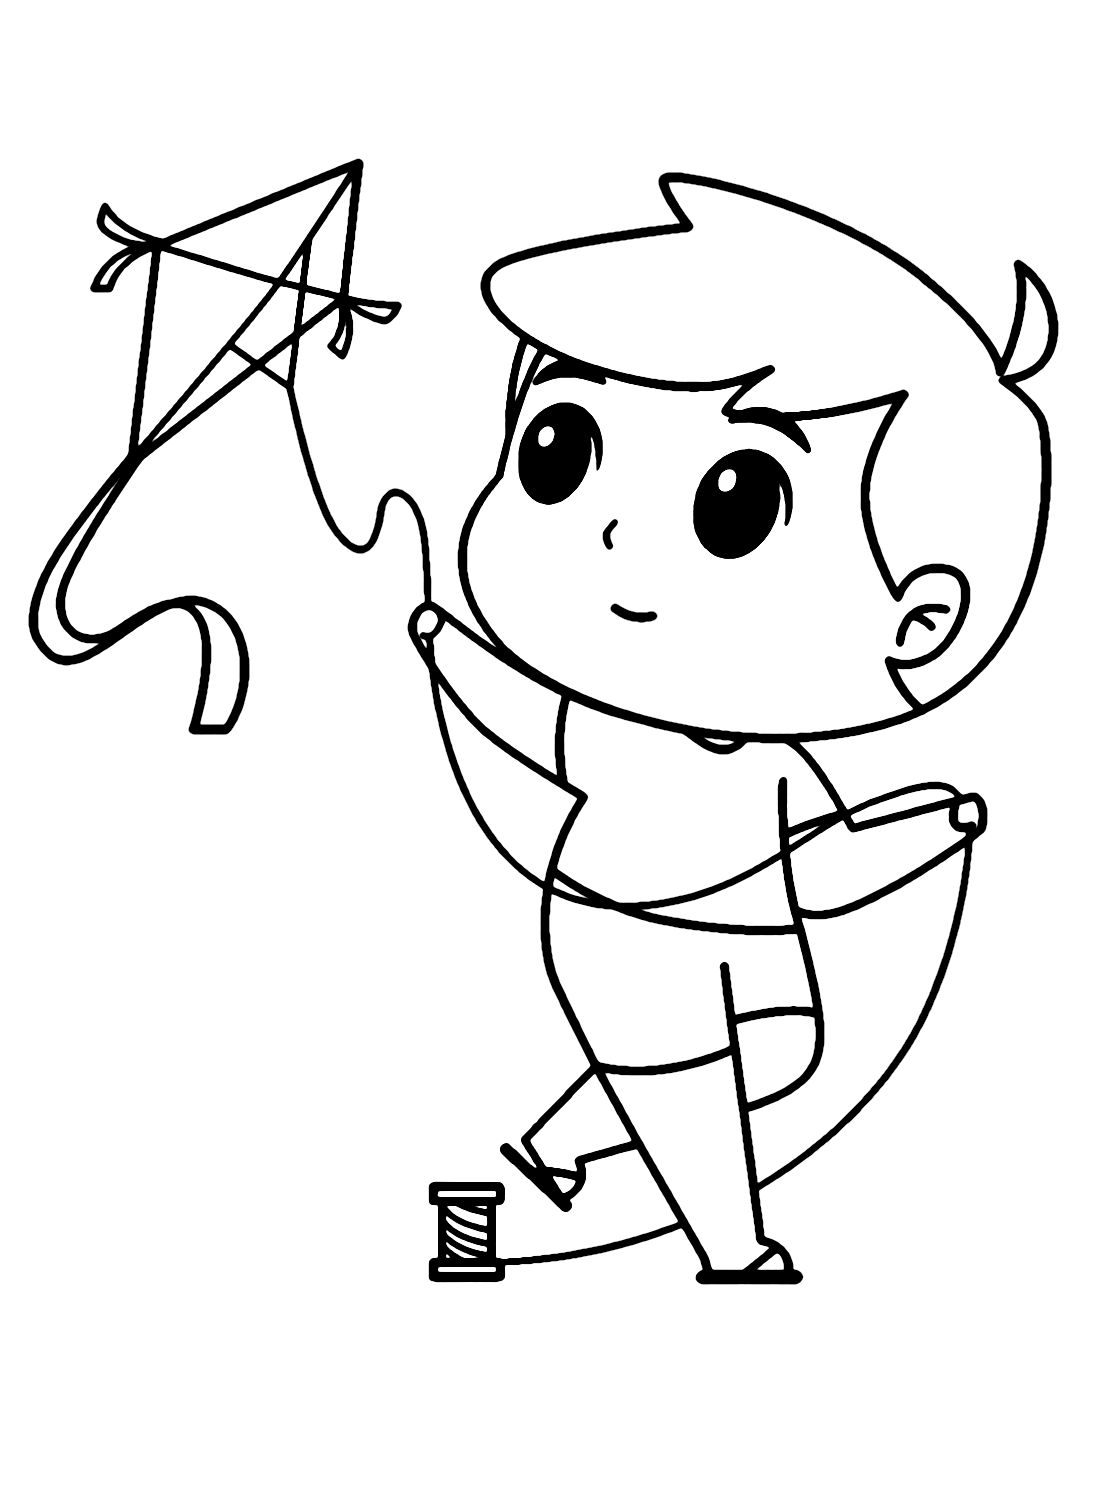 Boy Flying Kite